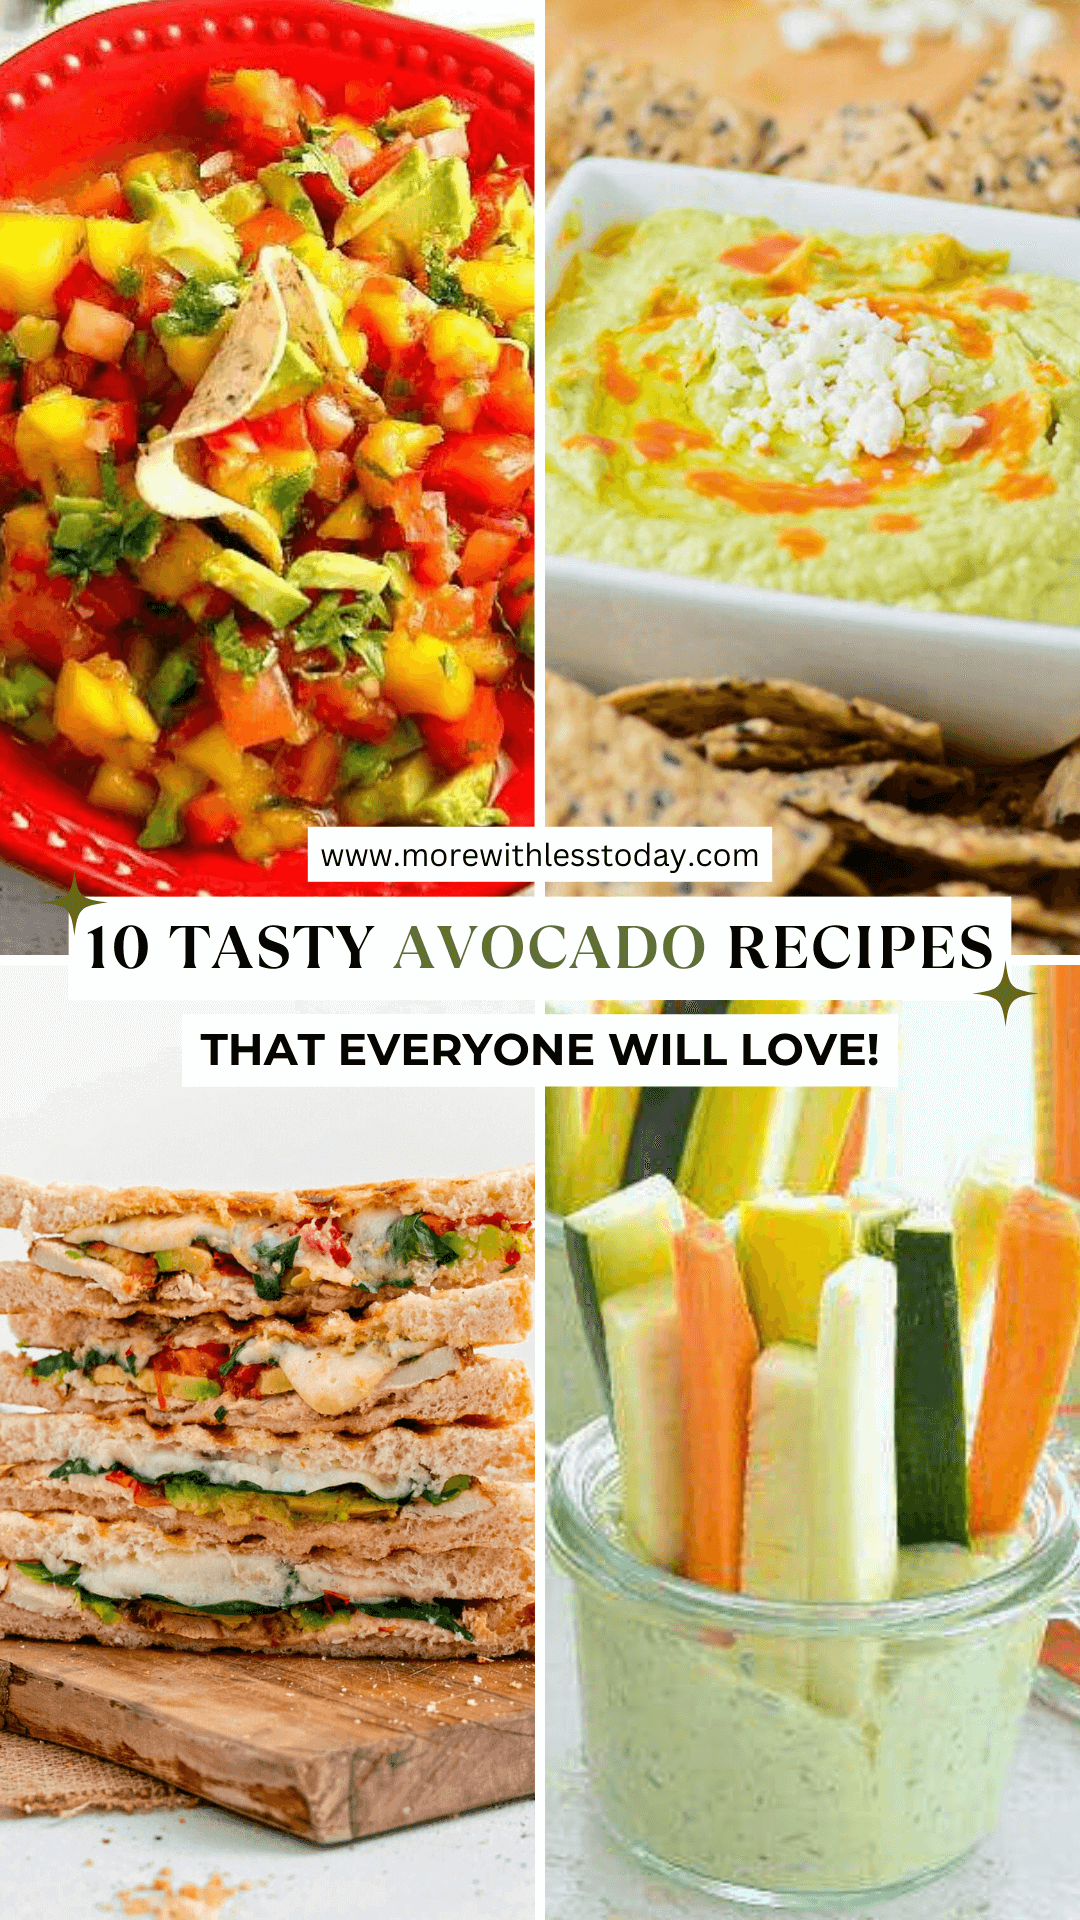 10 Tasty Avocado Recipes Everyone Will Love - PIN